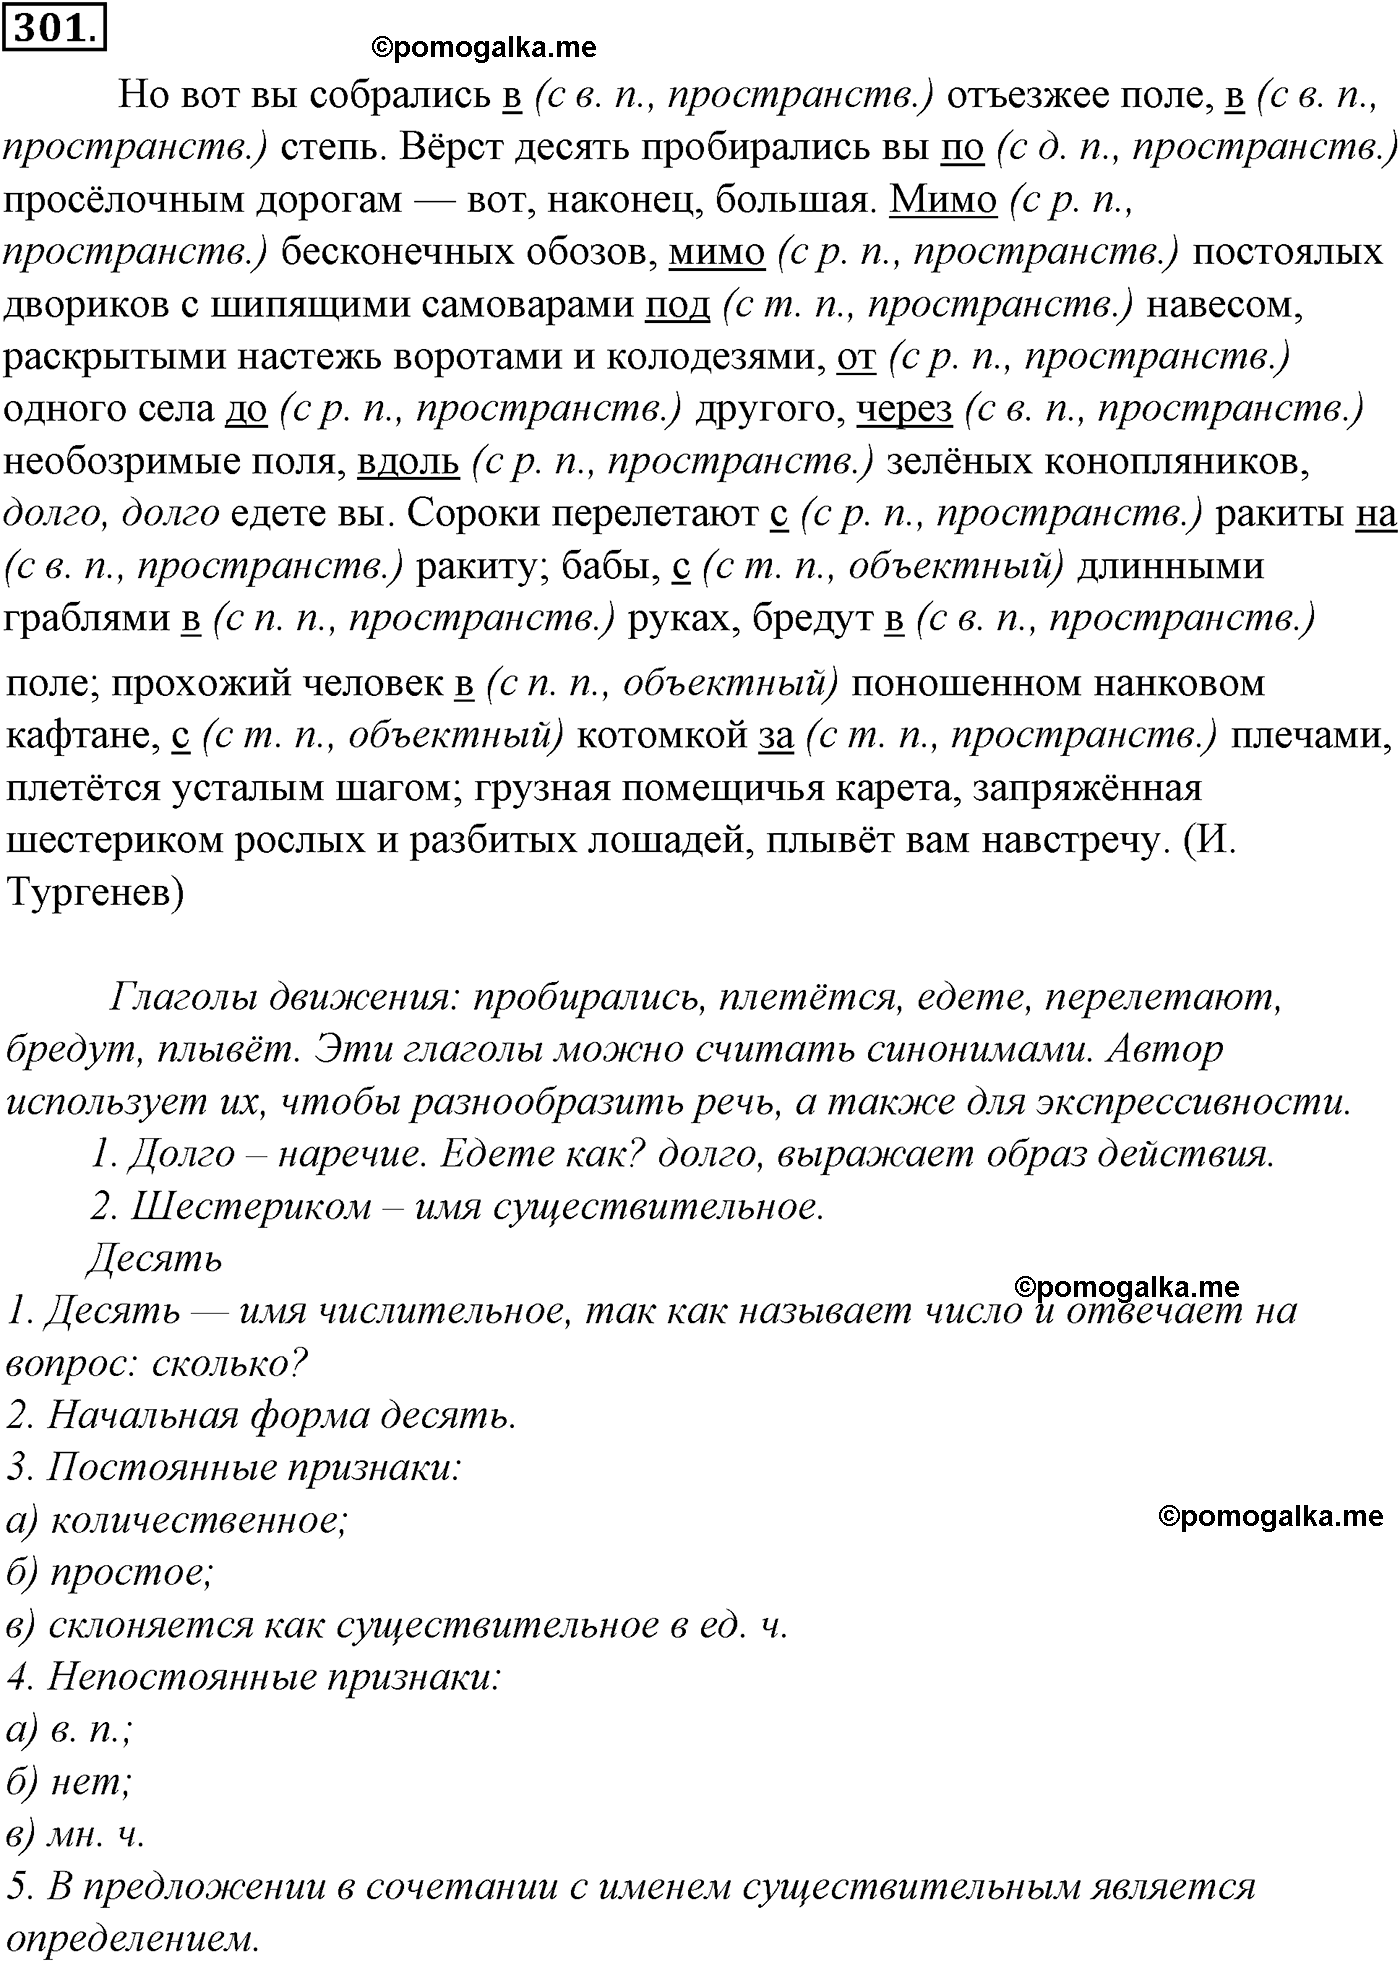 упражнение №301 русский язык 10-11 класс Гольцова